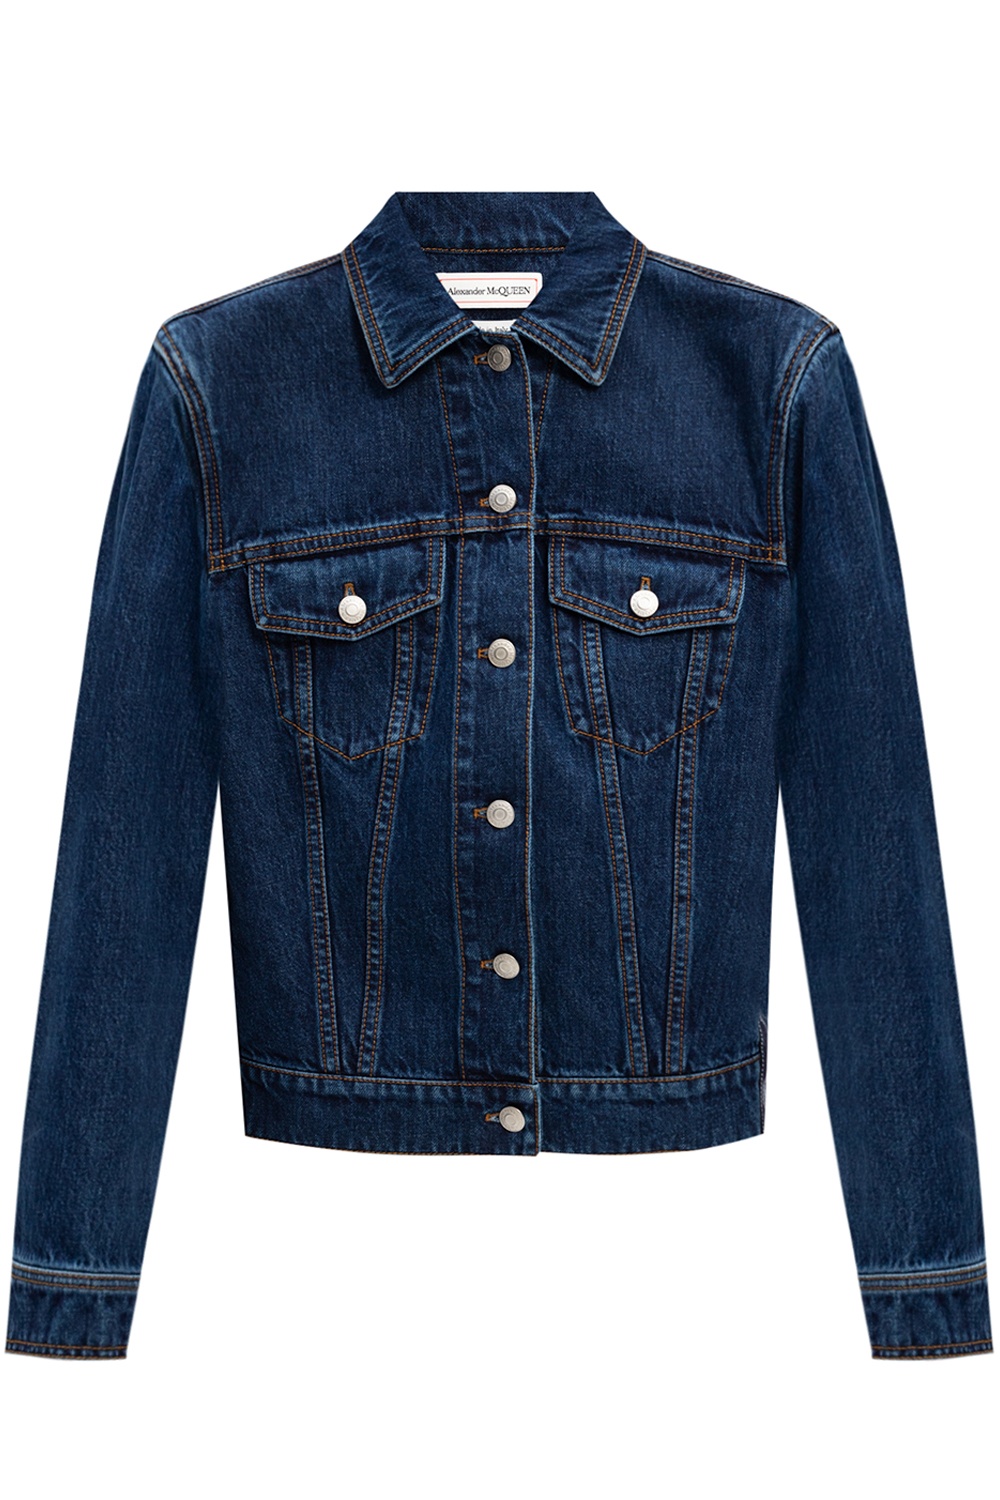 Alexander McQueen Denim jacket | Women's Clothing | IetpShops